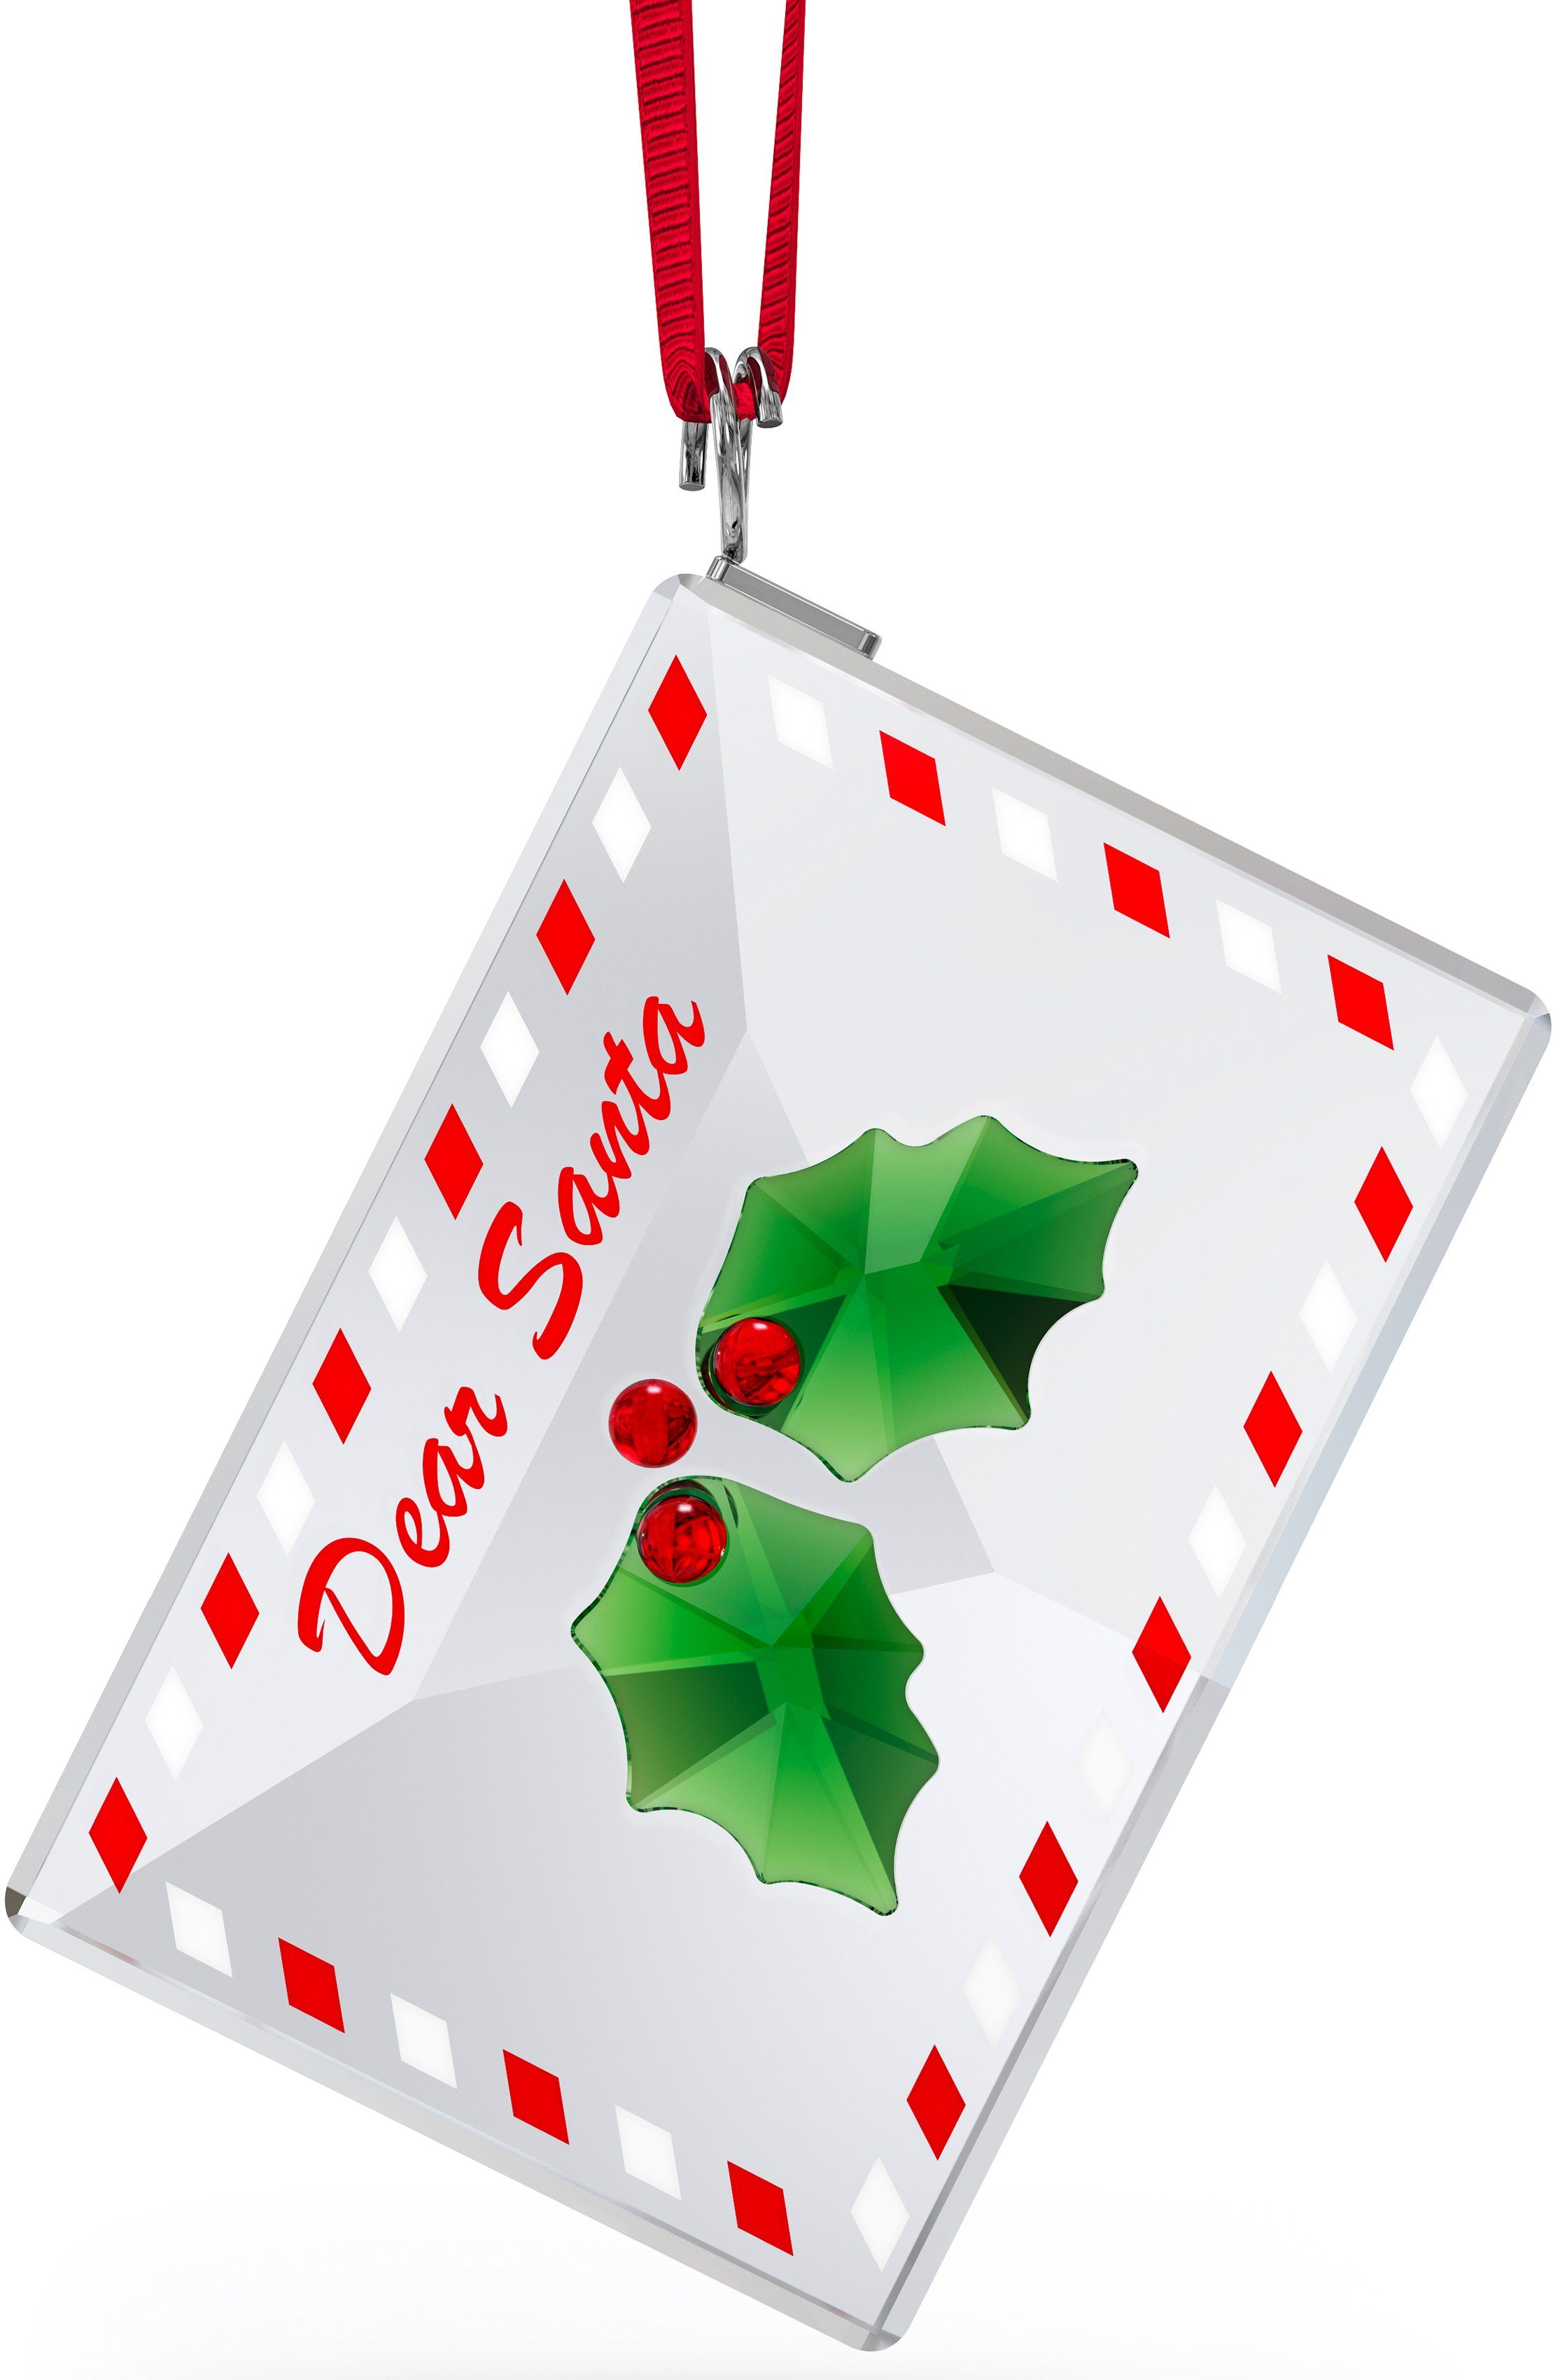 Swarovski Dekofigur Weihnachtsbaum Holiday Cheers Brief an Santa Ornament, 5630339 (1 St), Swarovski® Kristall